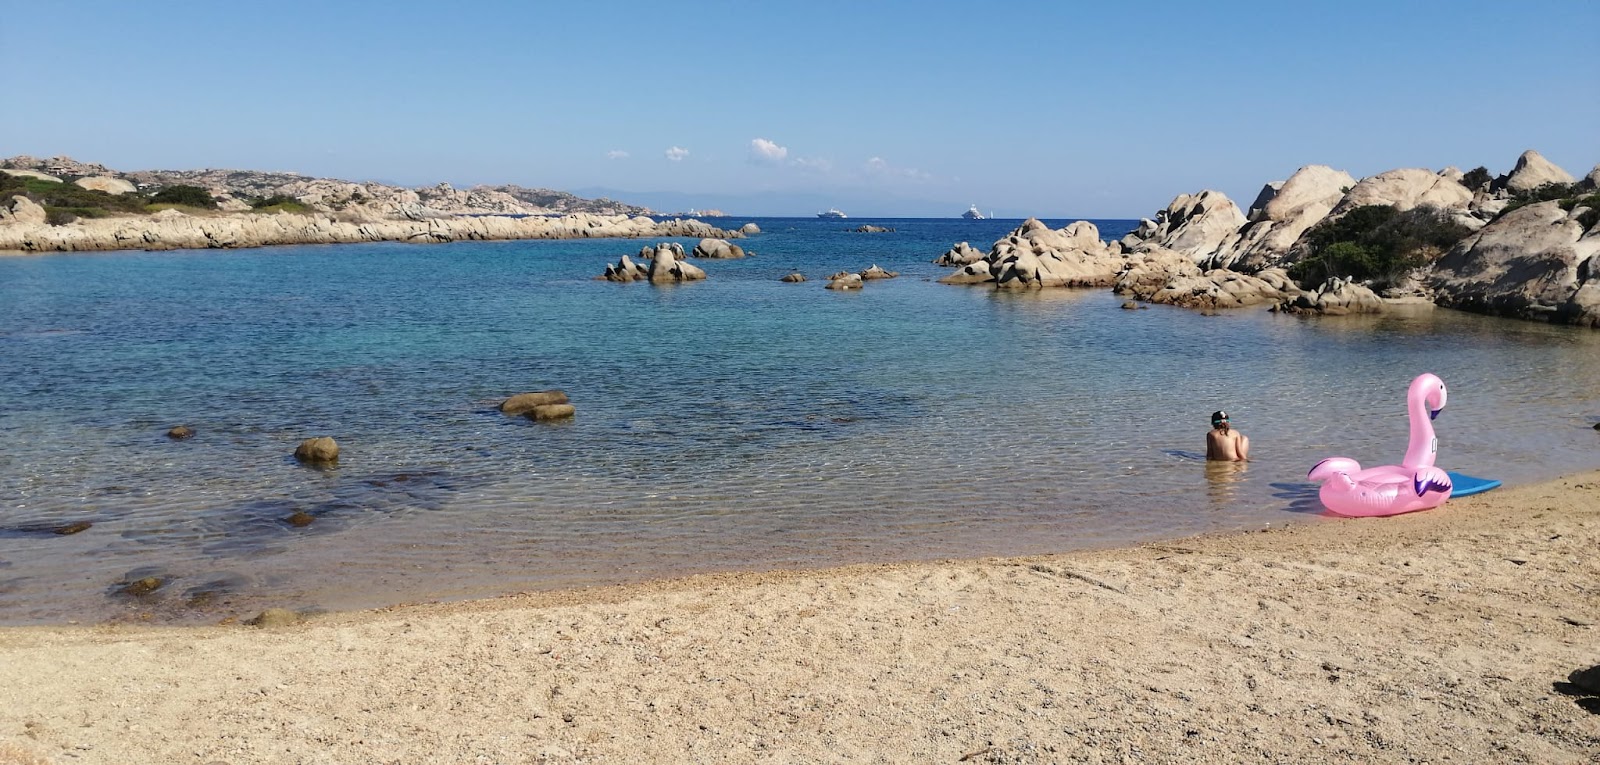 Photo of Spiaggia Testa Del Polpo with small bay